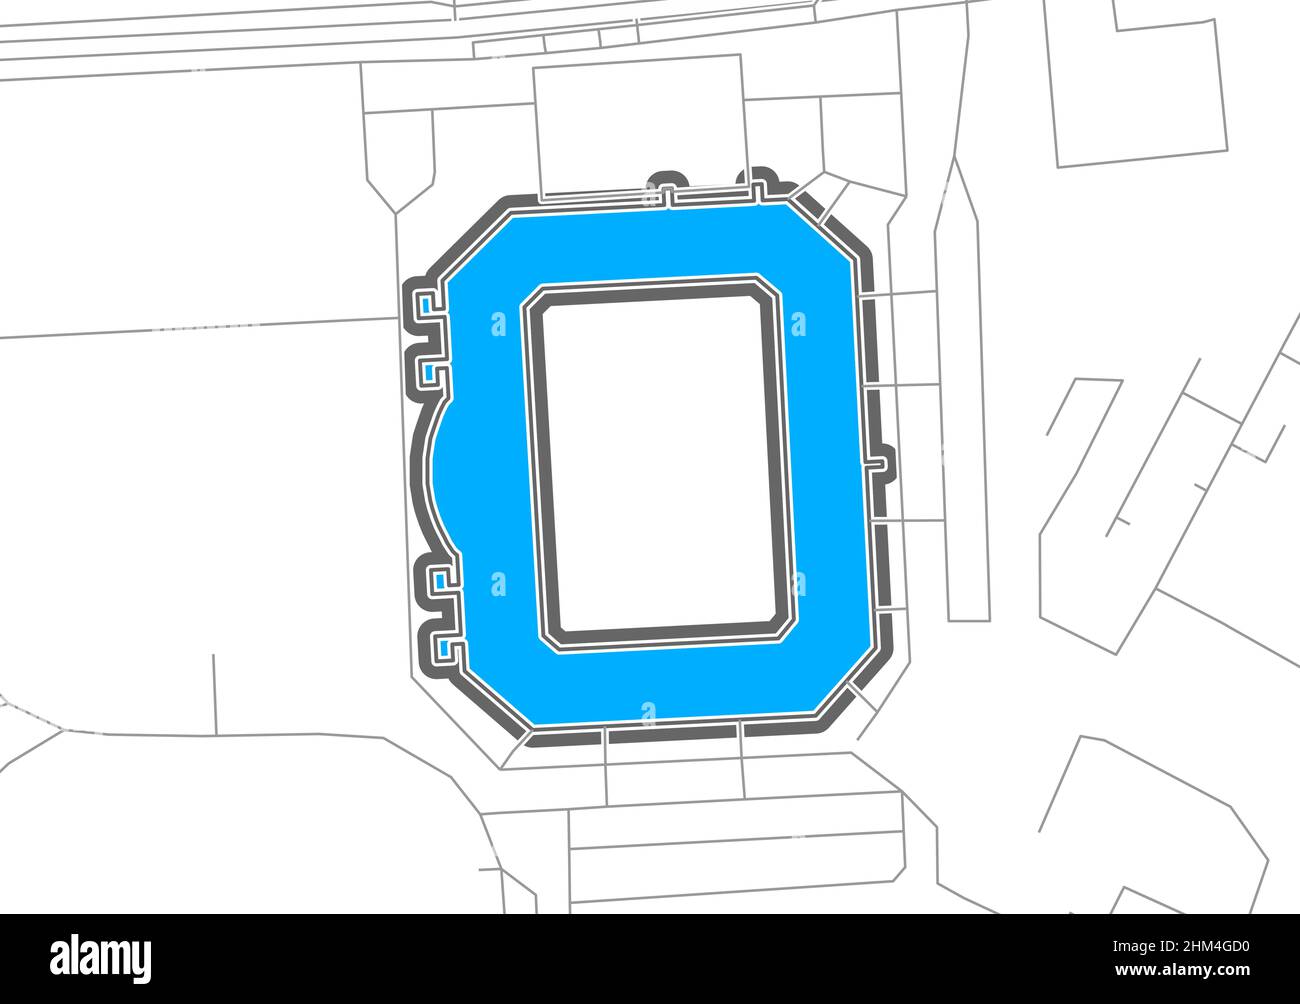 Rostock, stade de football, carte vectorielle.La carte bundesliga statium a été tracée avec des zones blanches et des lignes pour les routes principales, les routes latérales. Illustration de Vecteur